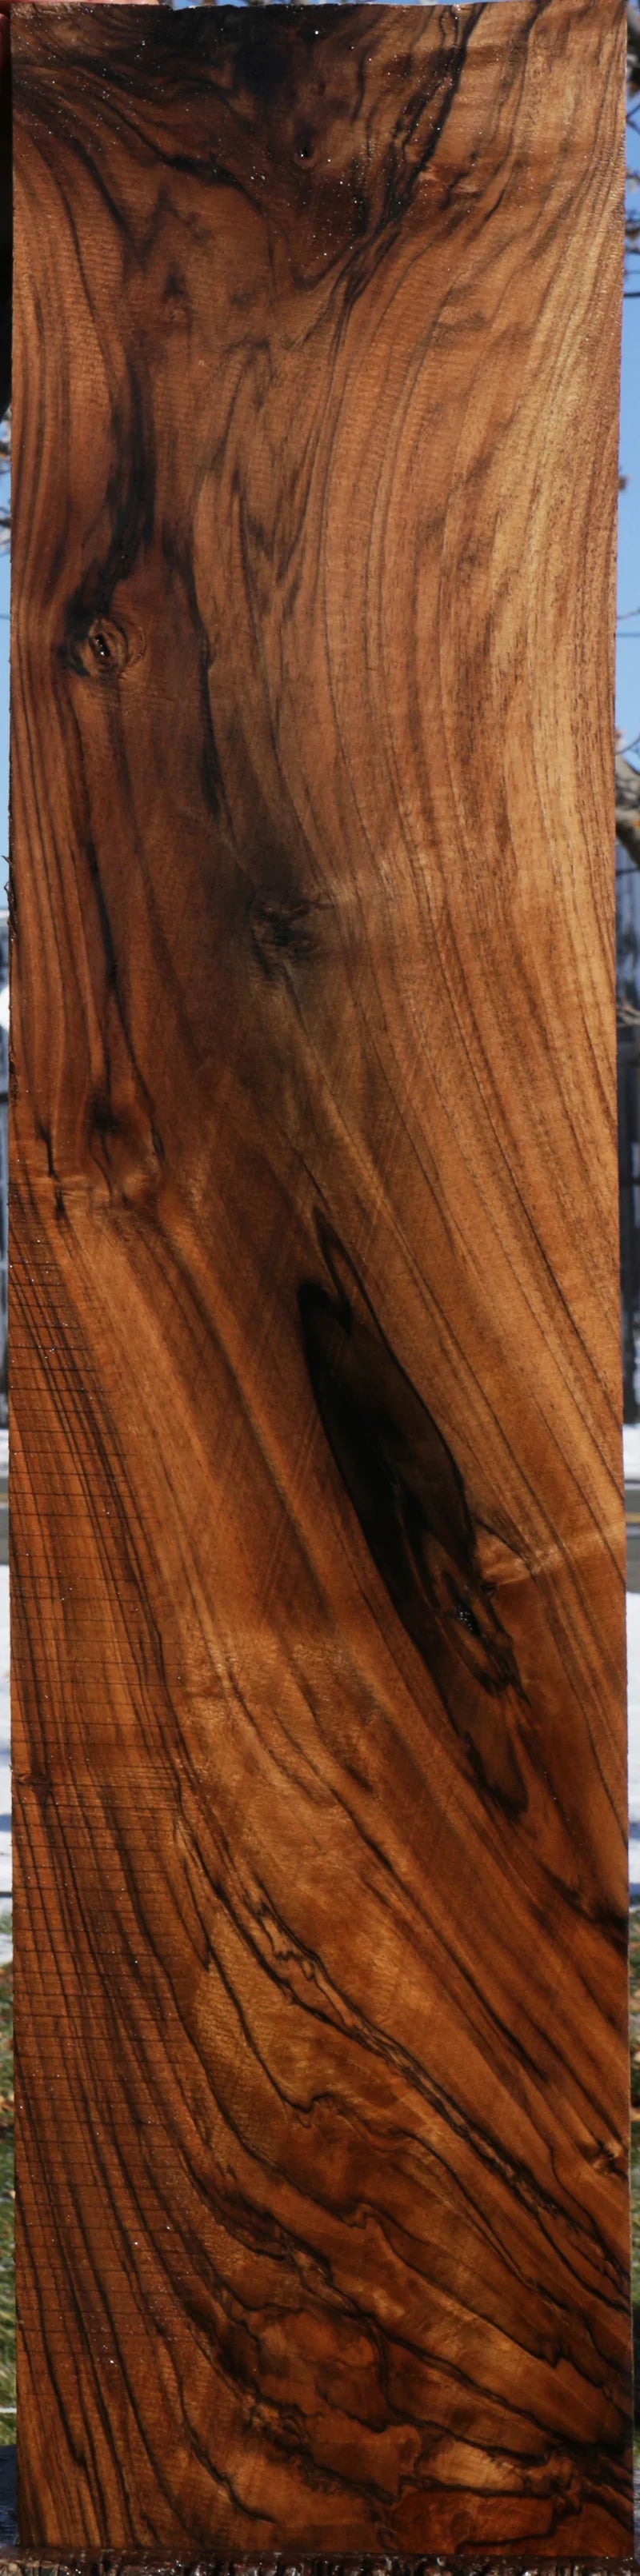 Exhibition Marblecake English Walnut Lumber